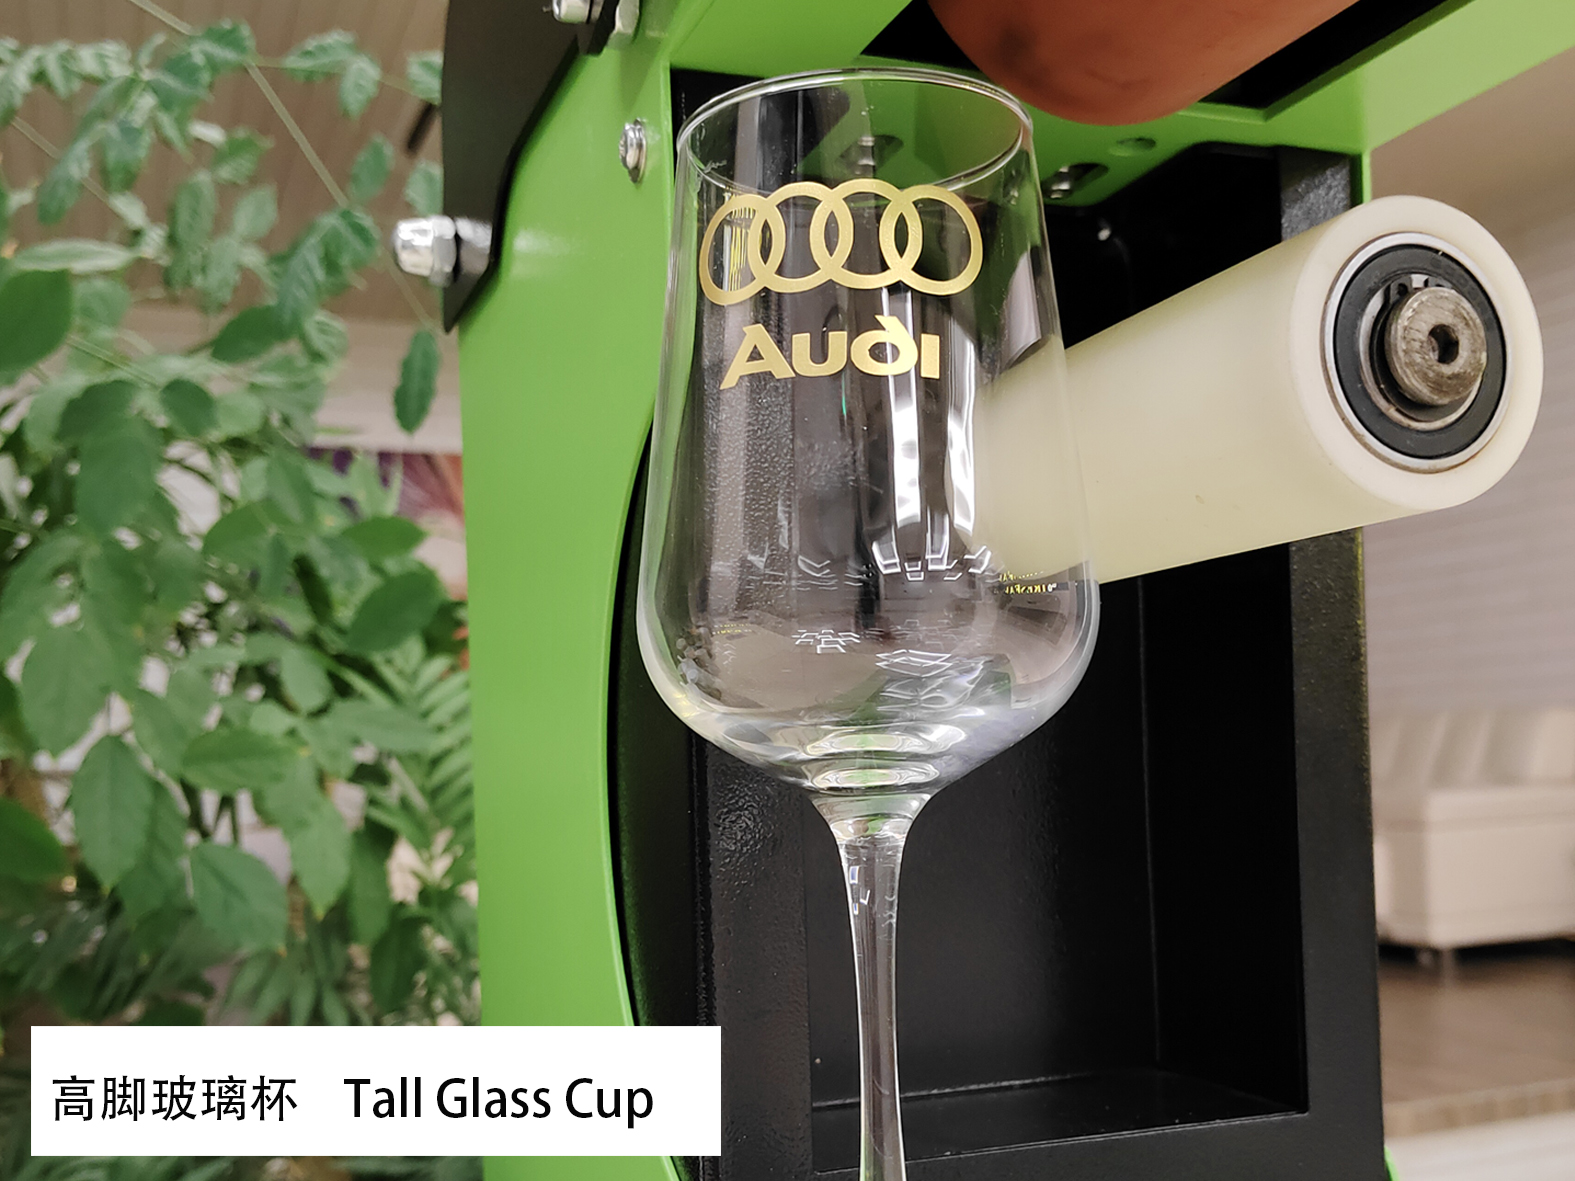 热转印标贴箔 高脚玻璃杯热转印2 ಶಾಖ ವರ್ಗಾವಣೆ ಡಿಕಾಲ್ಸ್ ಫಾಯಿಲ್ HSF-GD811